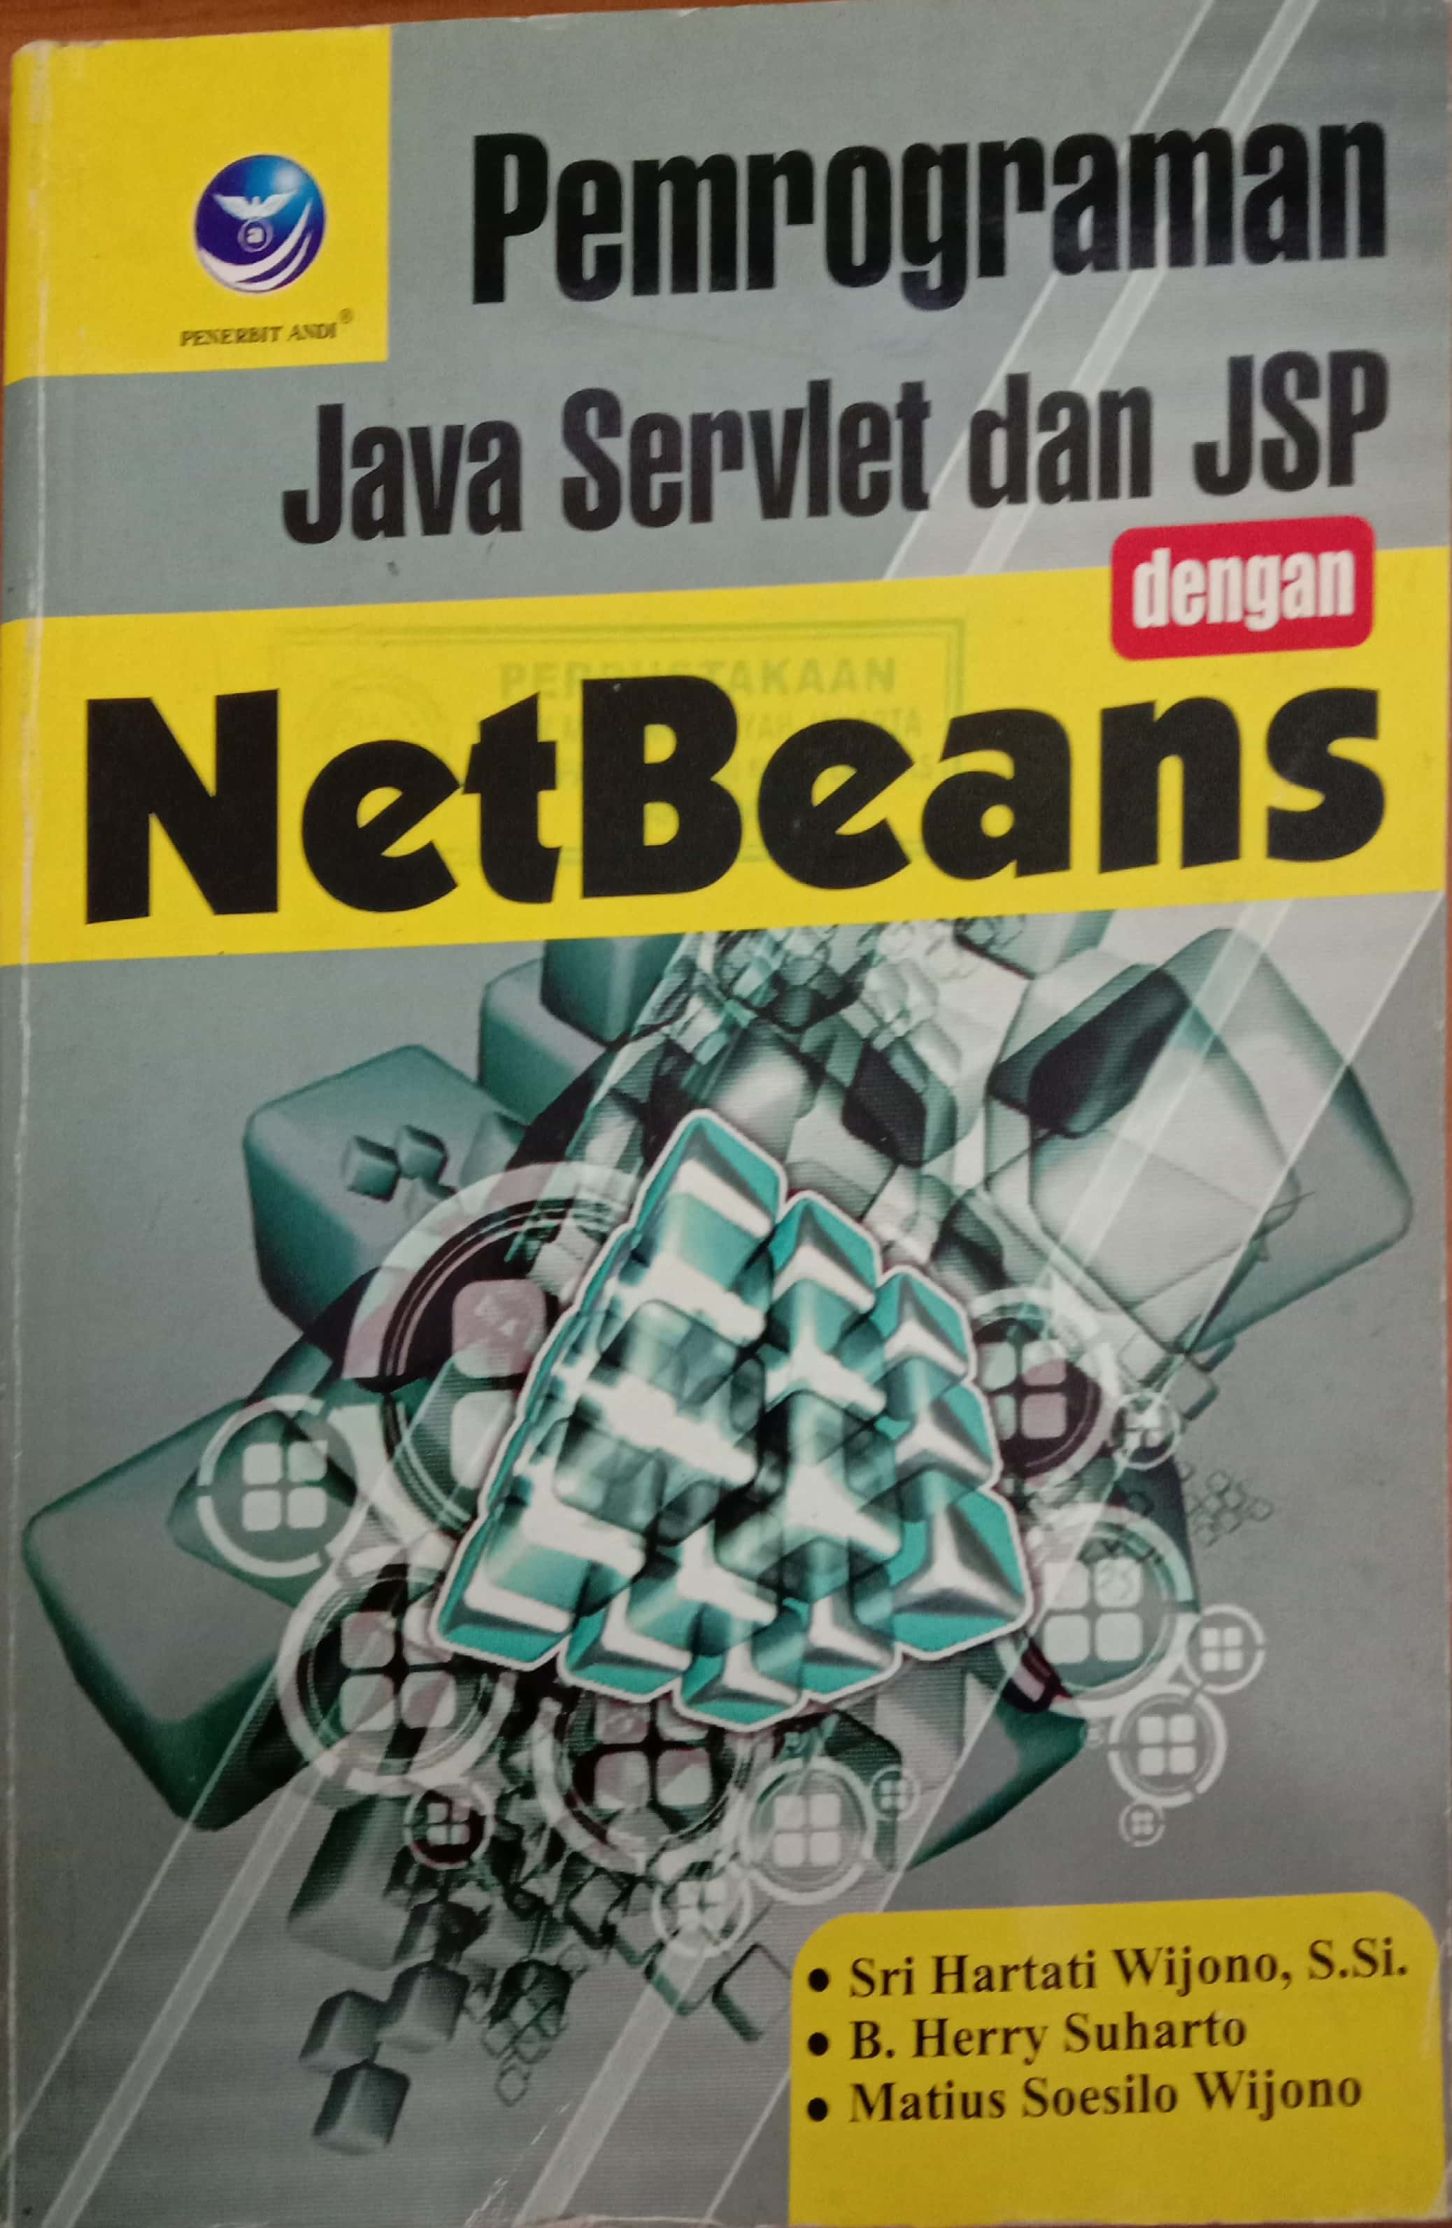 Pemrograman Java Servlet Dan JSP Dengan Net Beans